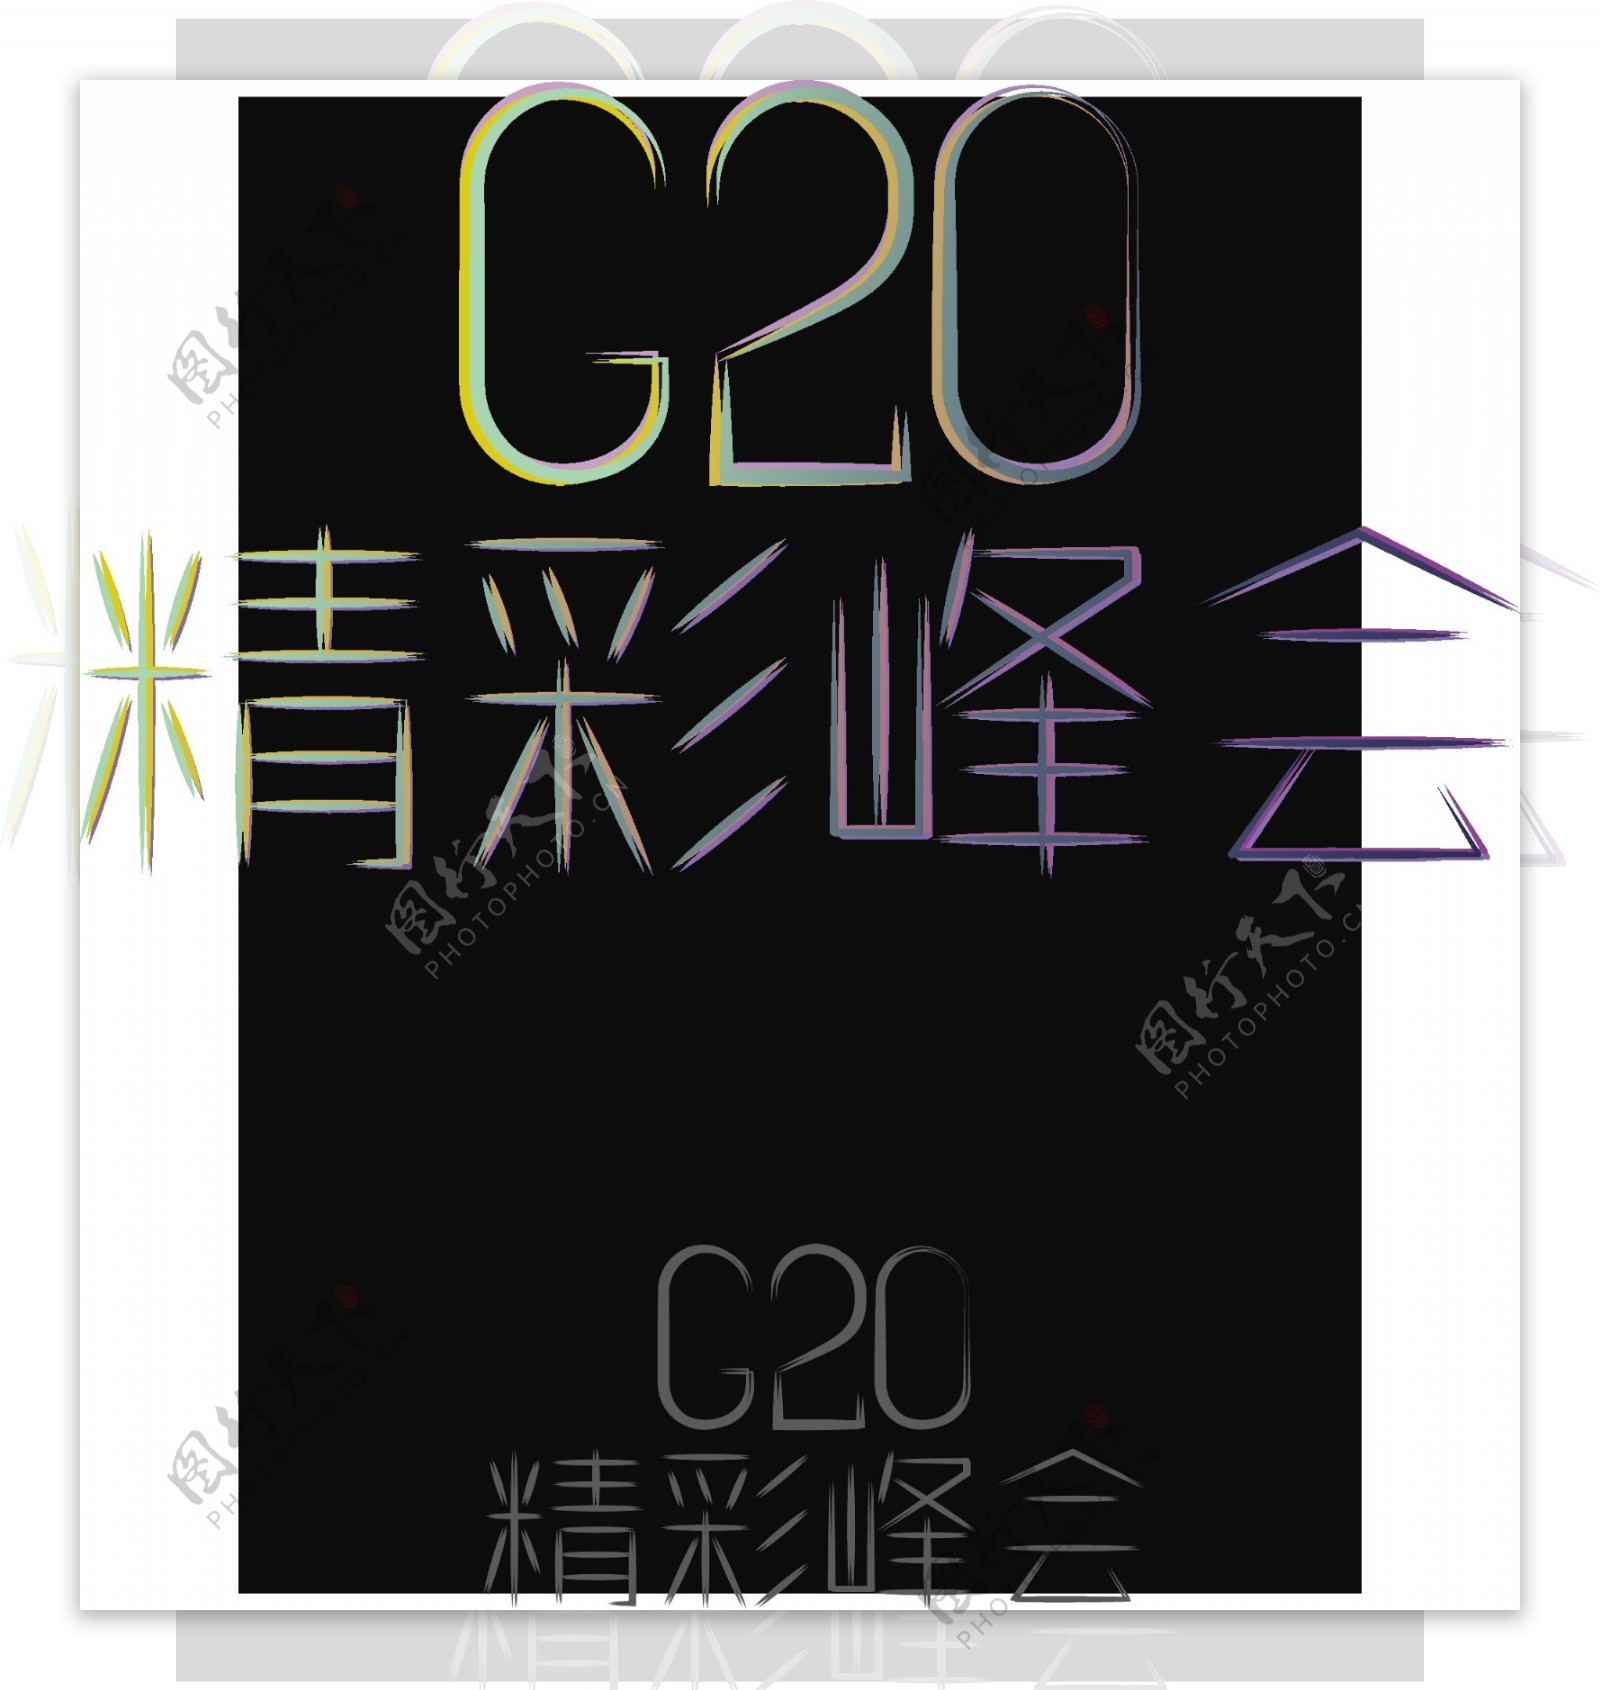 G20峰会创意字体立体艺术字